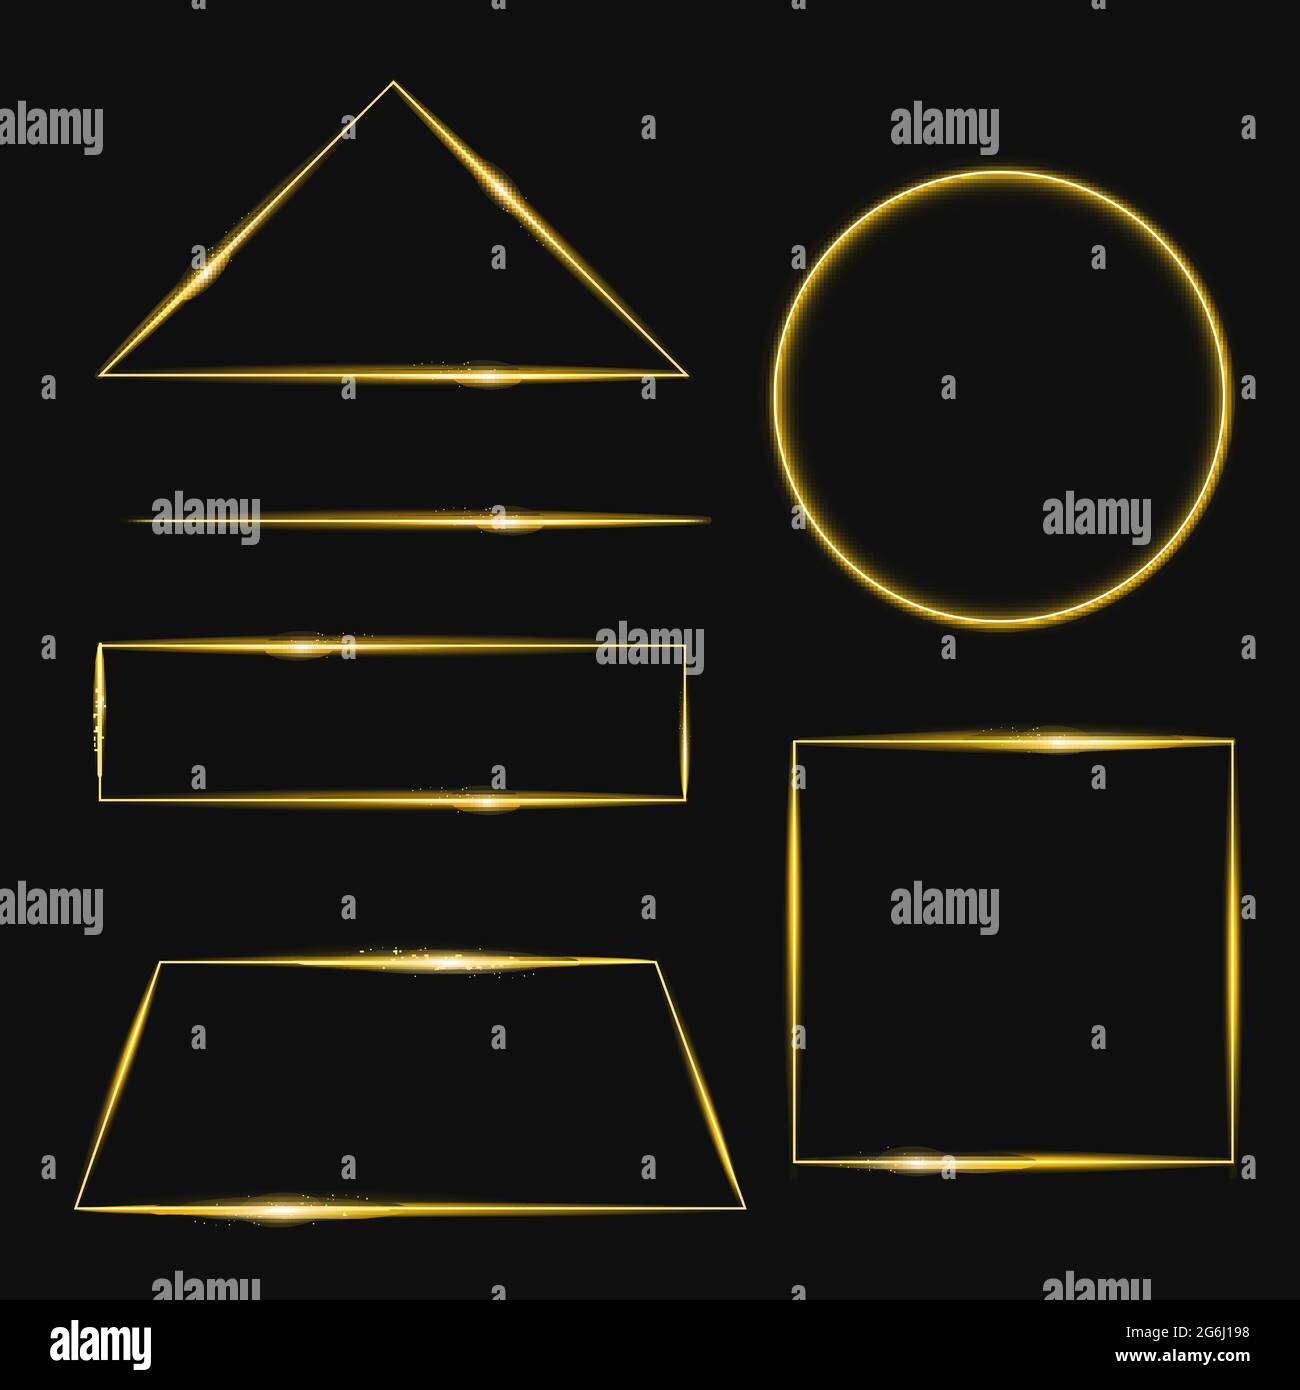 Vektor-Illustration Satz von goldenen Rahmen mit Lichteffekten in verschiedenen Formen. Glänzendes rechteckiges Banner. Isoliert auf schwarzem Hintergrund. Stock Vektor